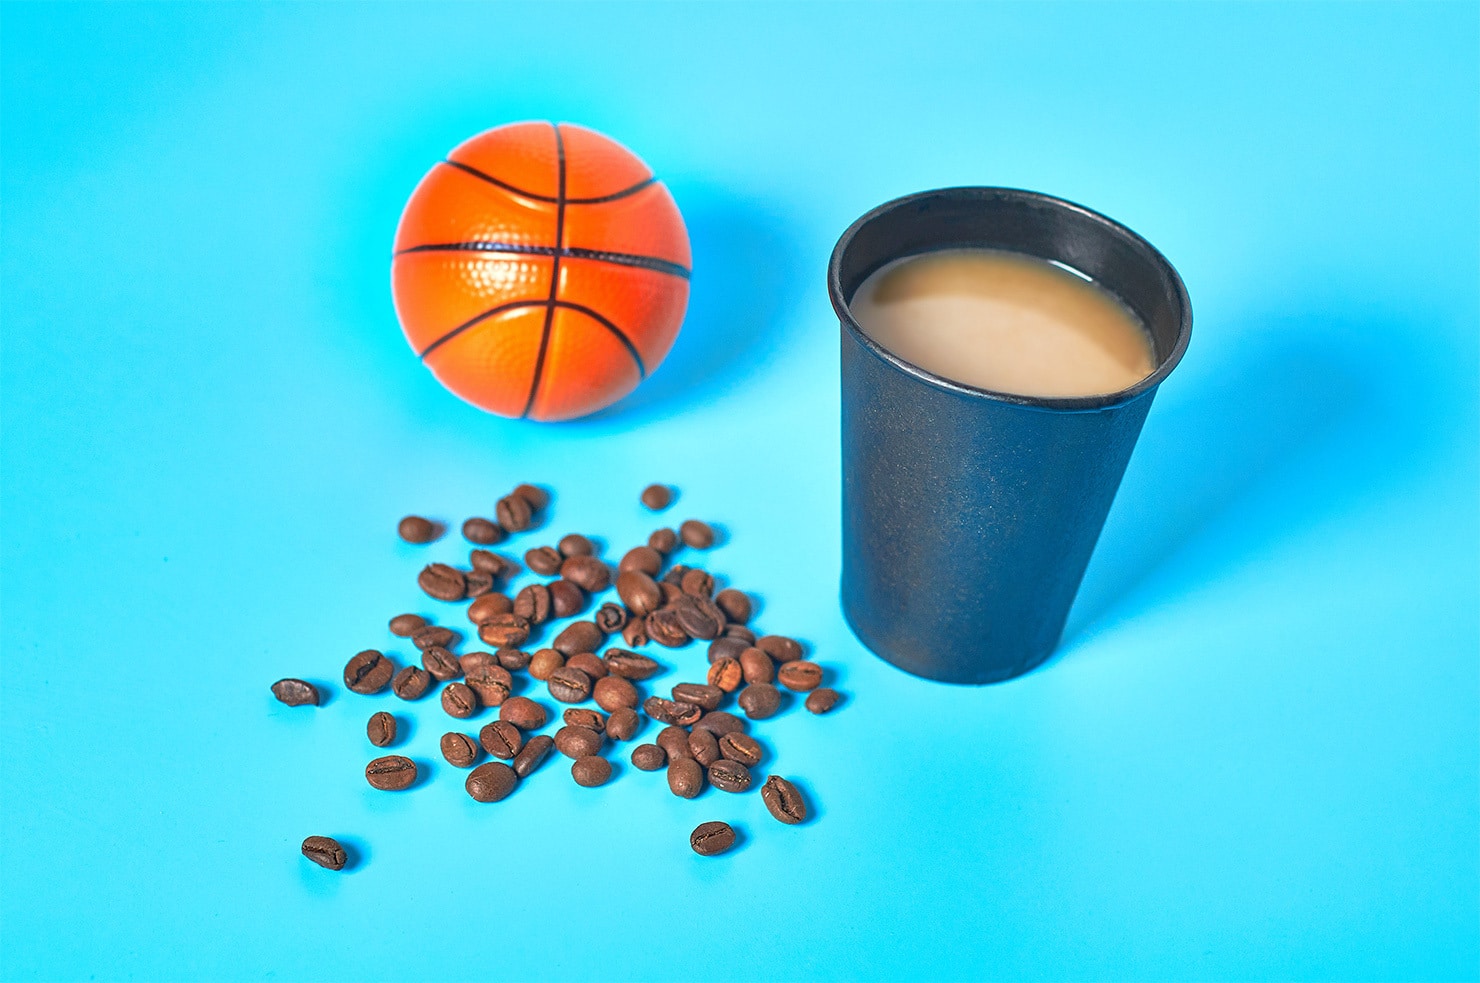 Basketball Coffee